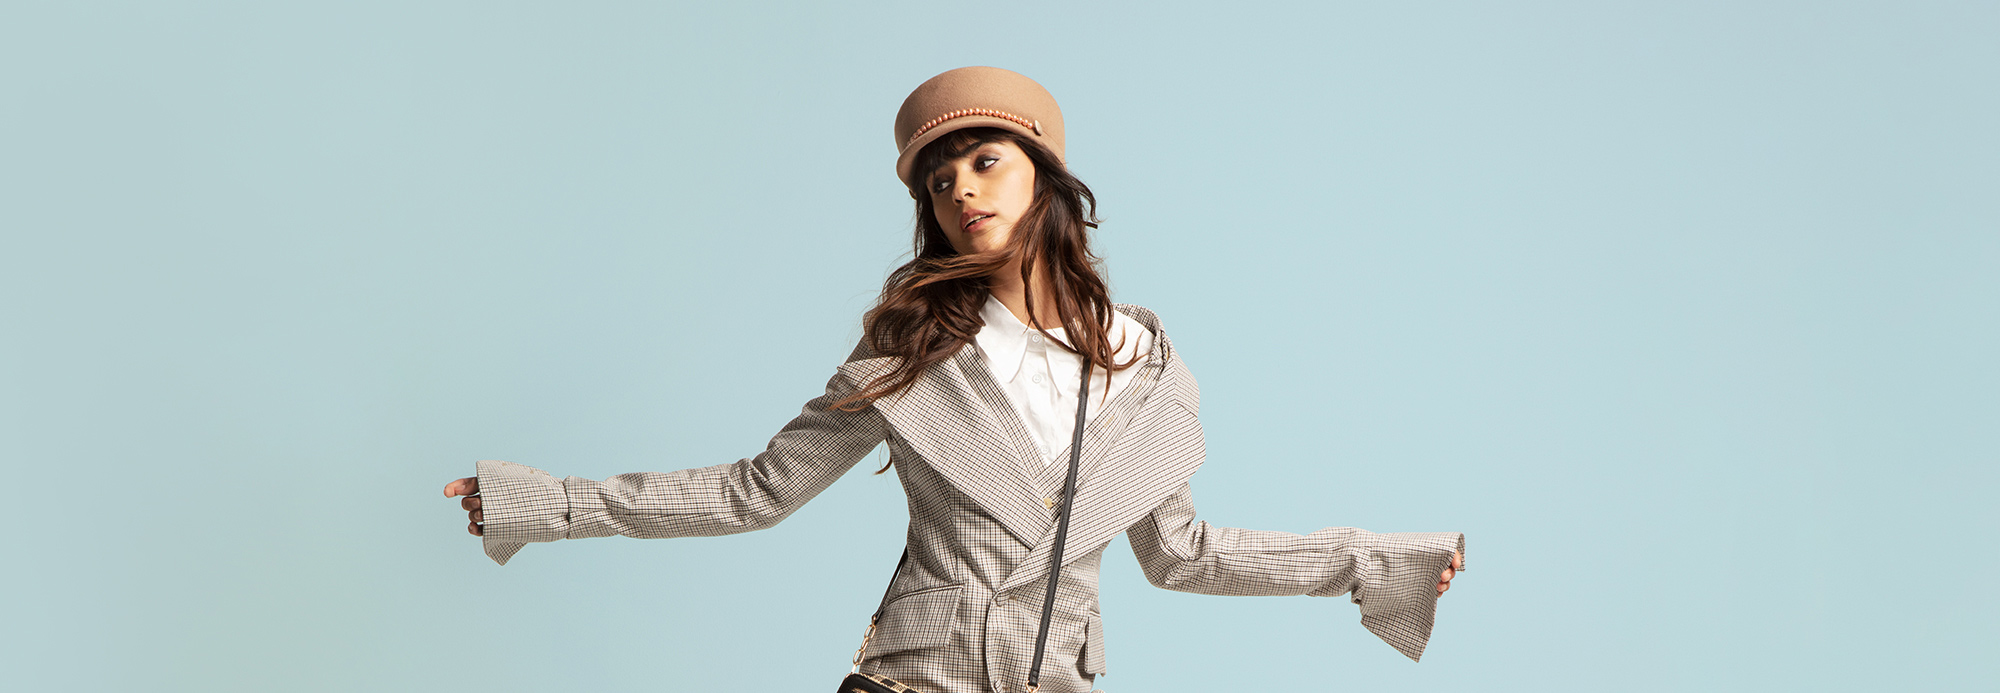 一名年轻女子穿着一件超大号的运动夹克，戴着一顶列车长的帽子，摆着一个姿势